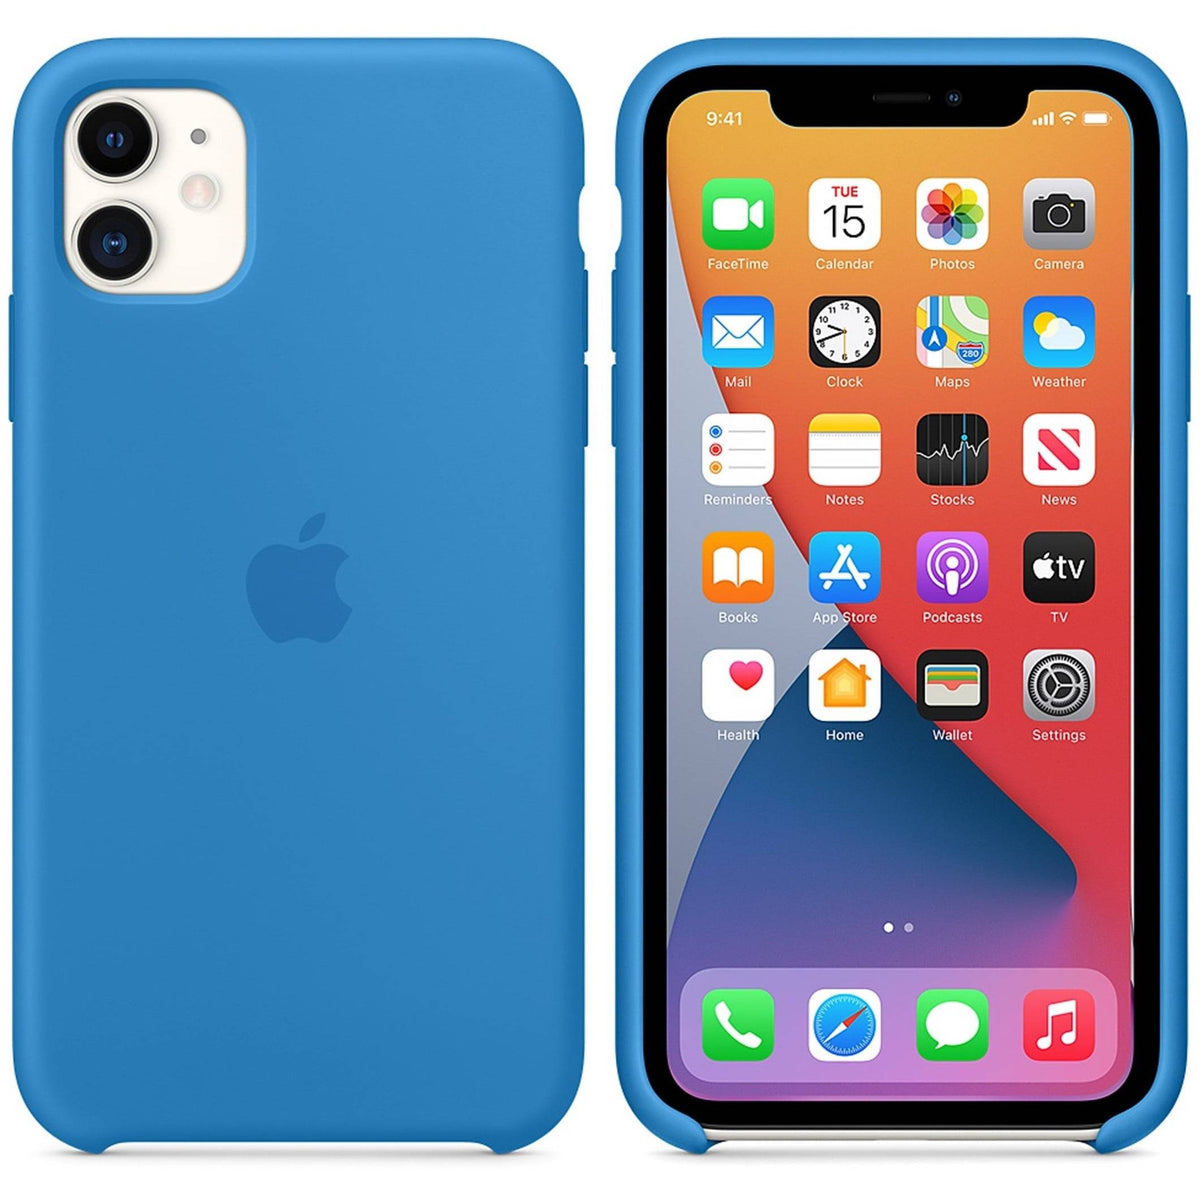 Funda de silicona con MagSafe Apple Azul marino oscuro para iPhone 12 Pro  Max - Funda para teléfono móvil